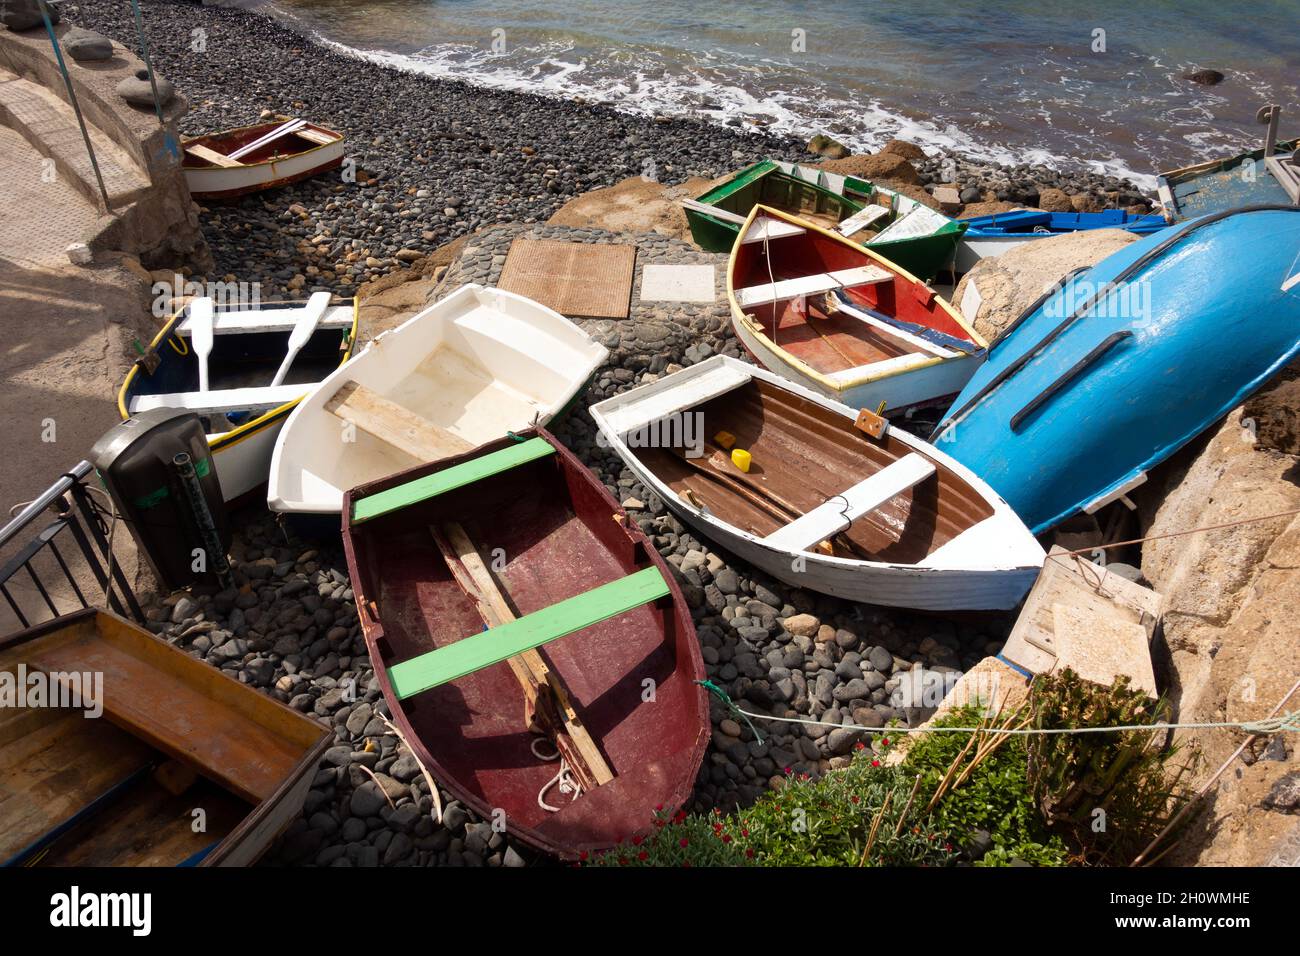 divers petits bateaux sur une plage Banque D'Images